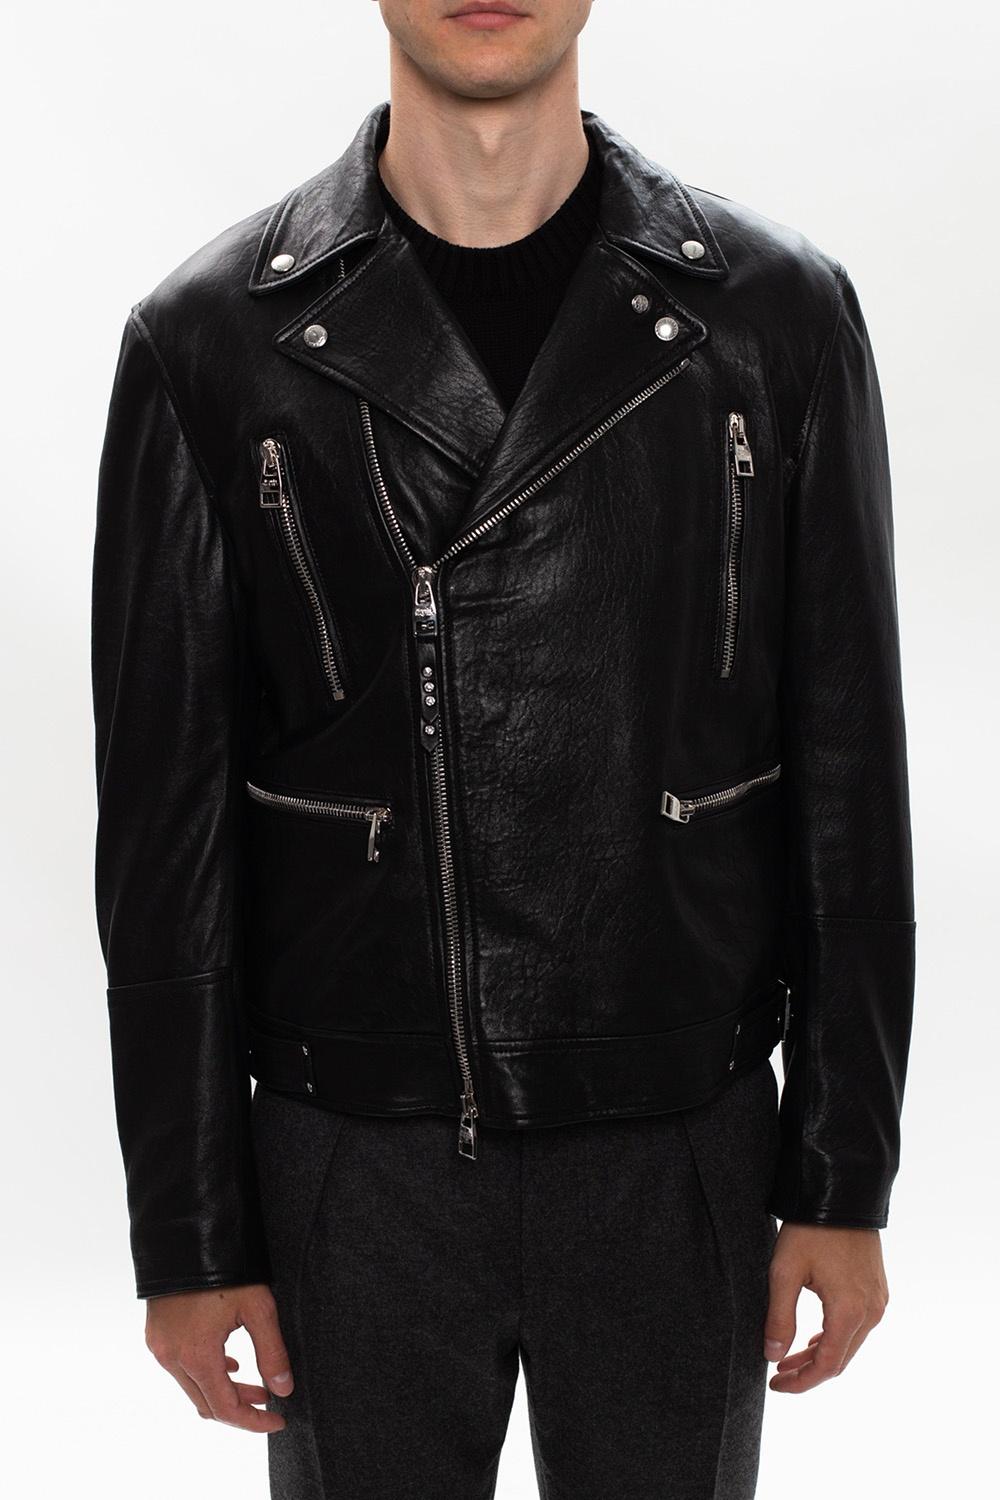 Alexander McQueen Leather Biker Jacket in Black for Men - Lyst